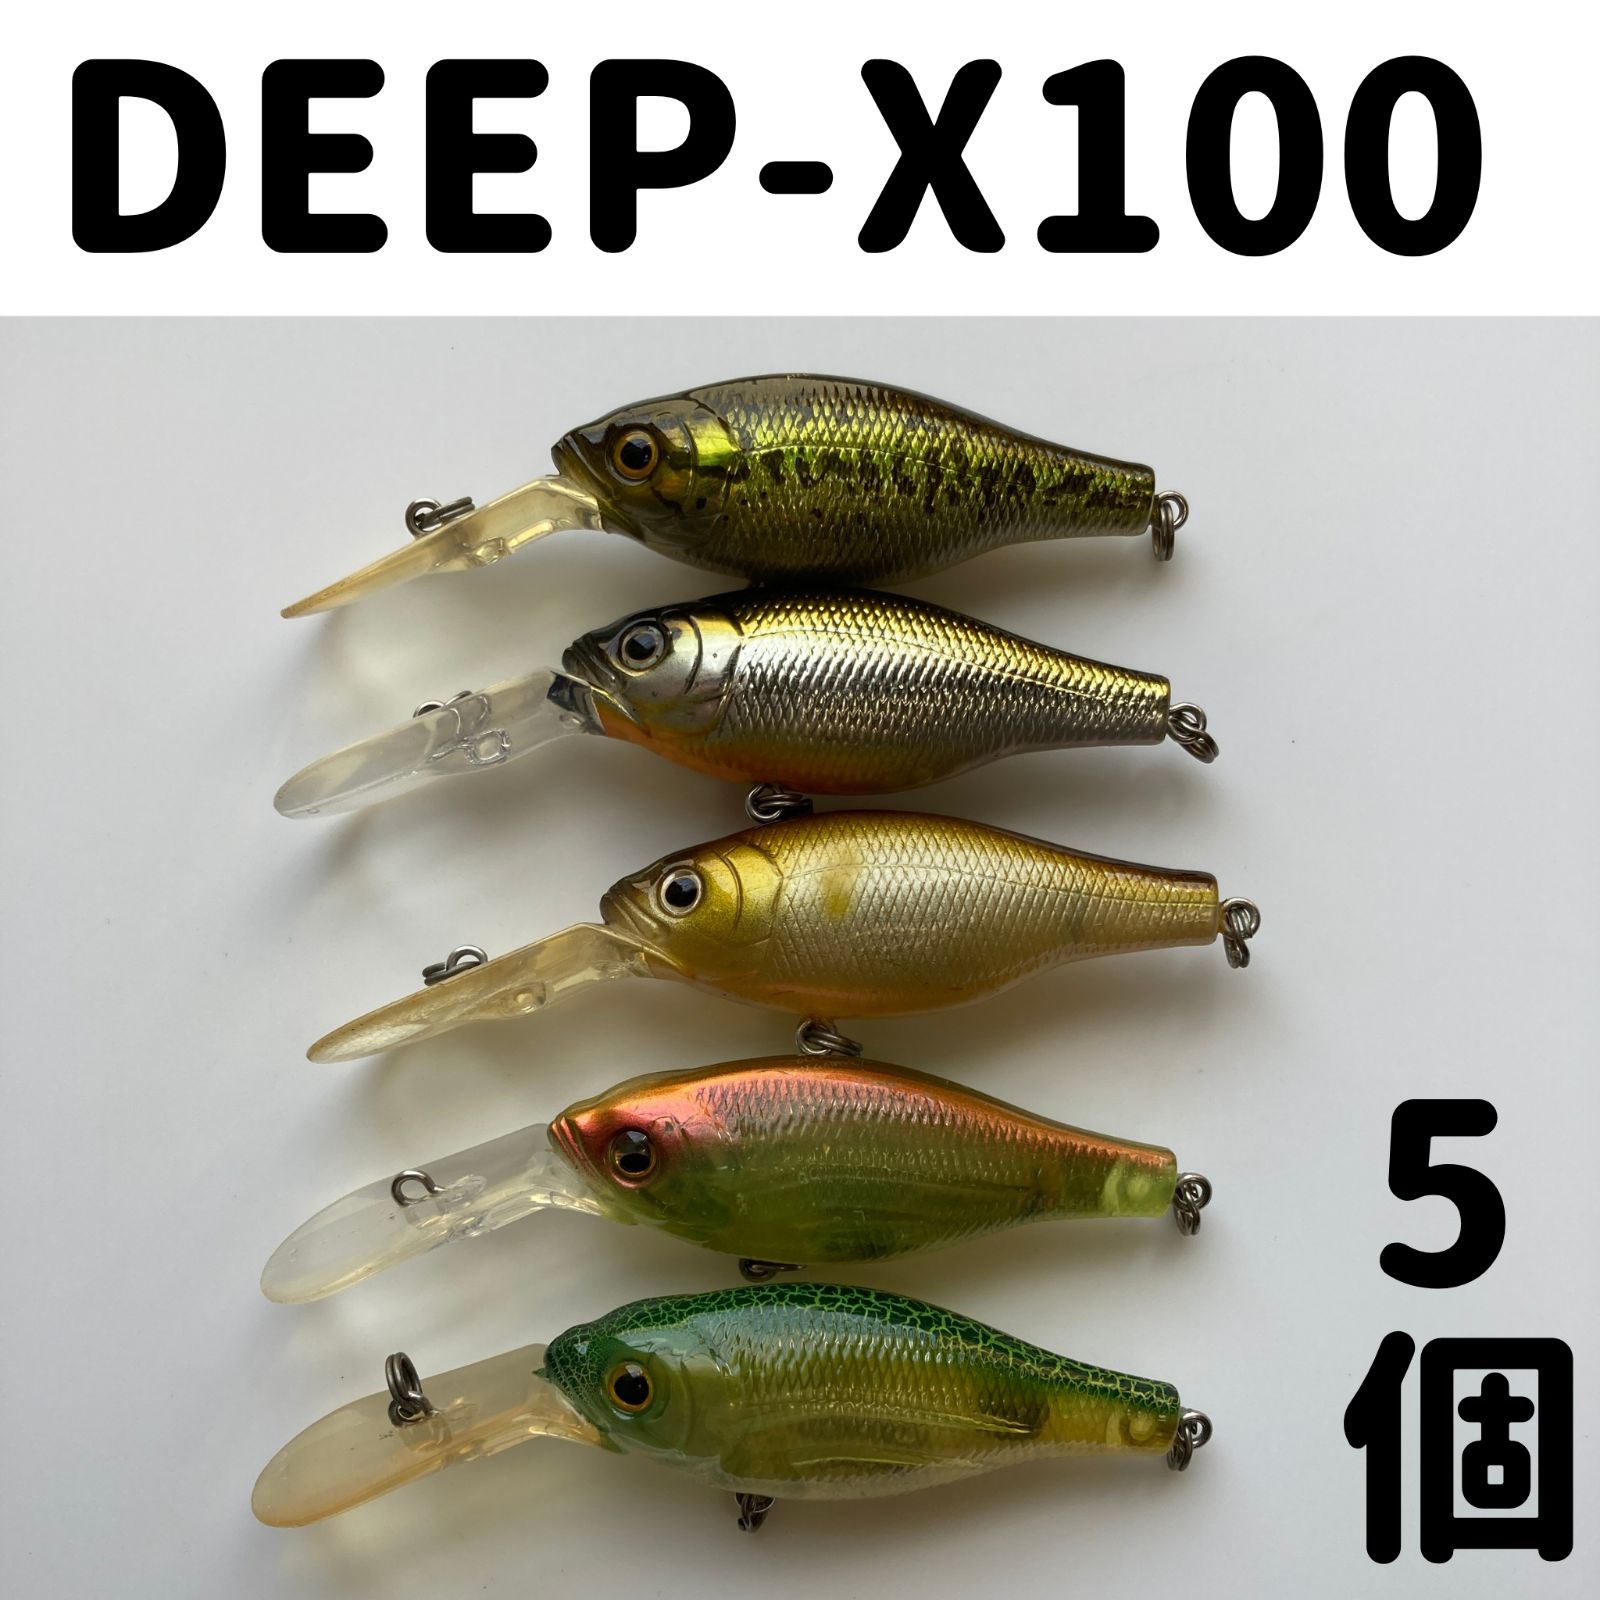 メガバス DEEP-X 100 五個セット(管理番号124) - ショップSC - メルカリ